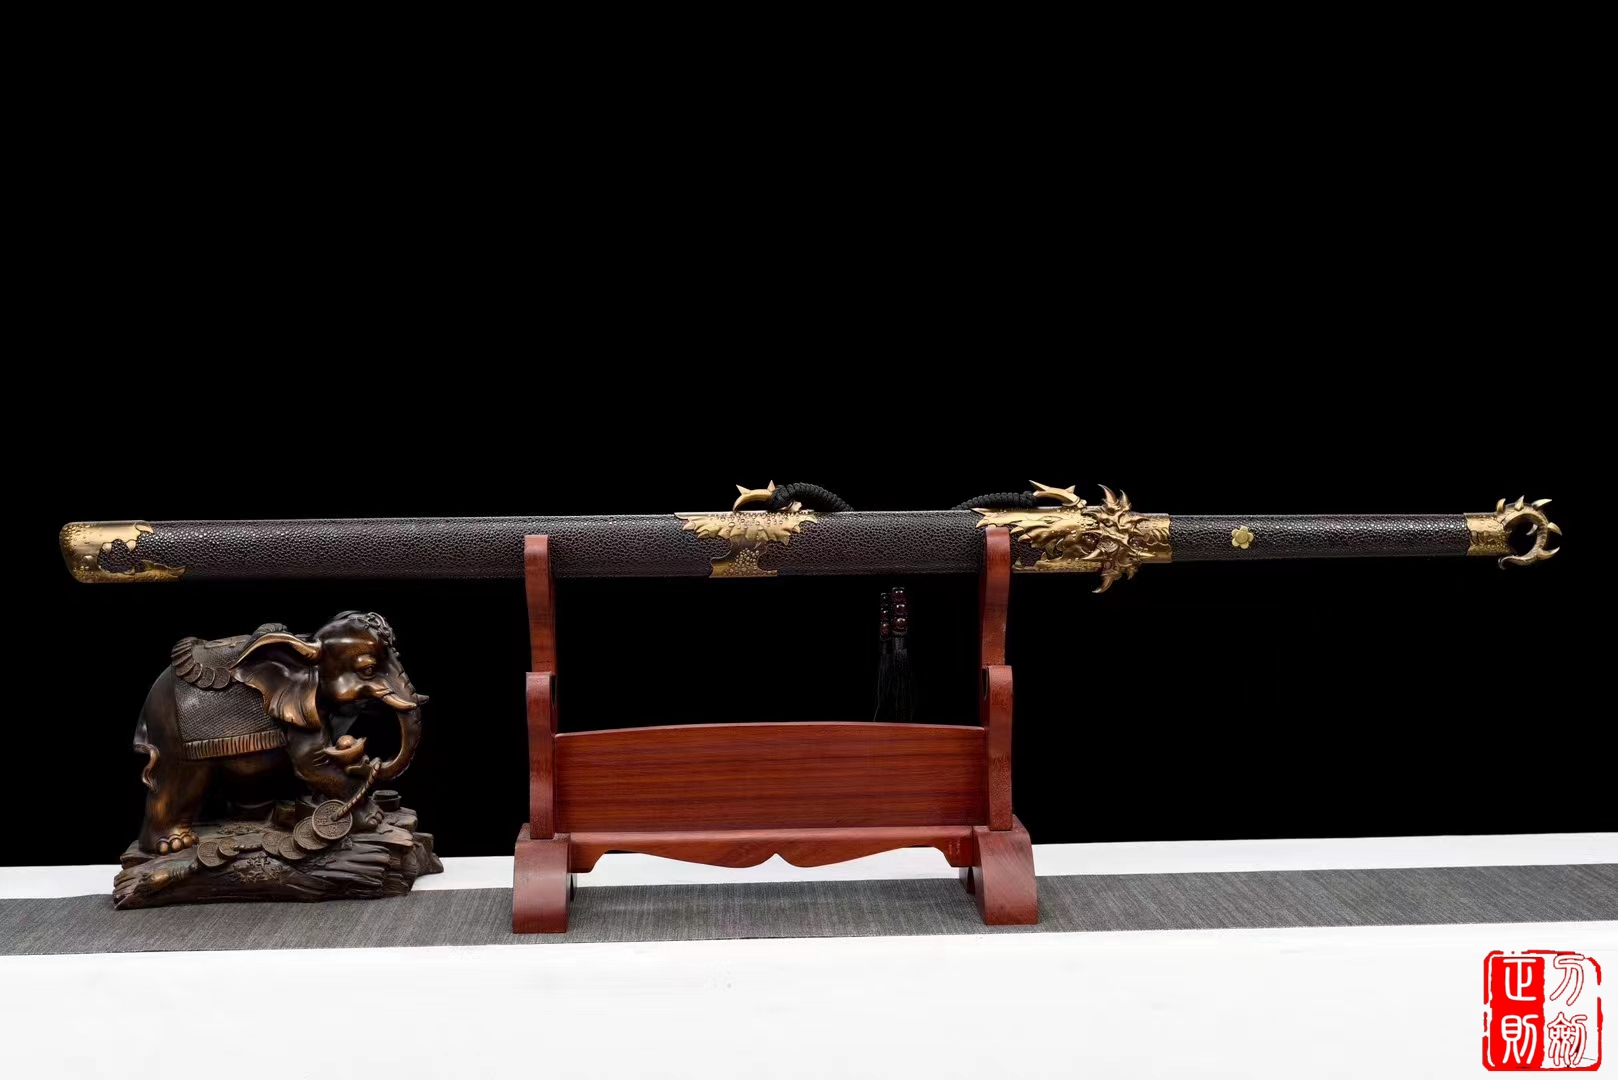 龙爪唐横刀|锰钢龙泉正则sword|中国唐刀,唐横刀,唐刀图片